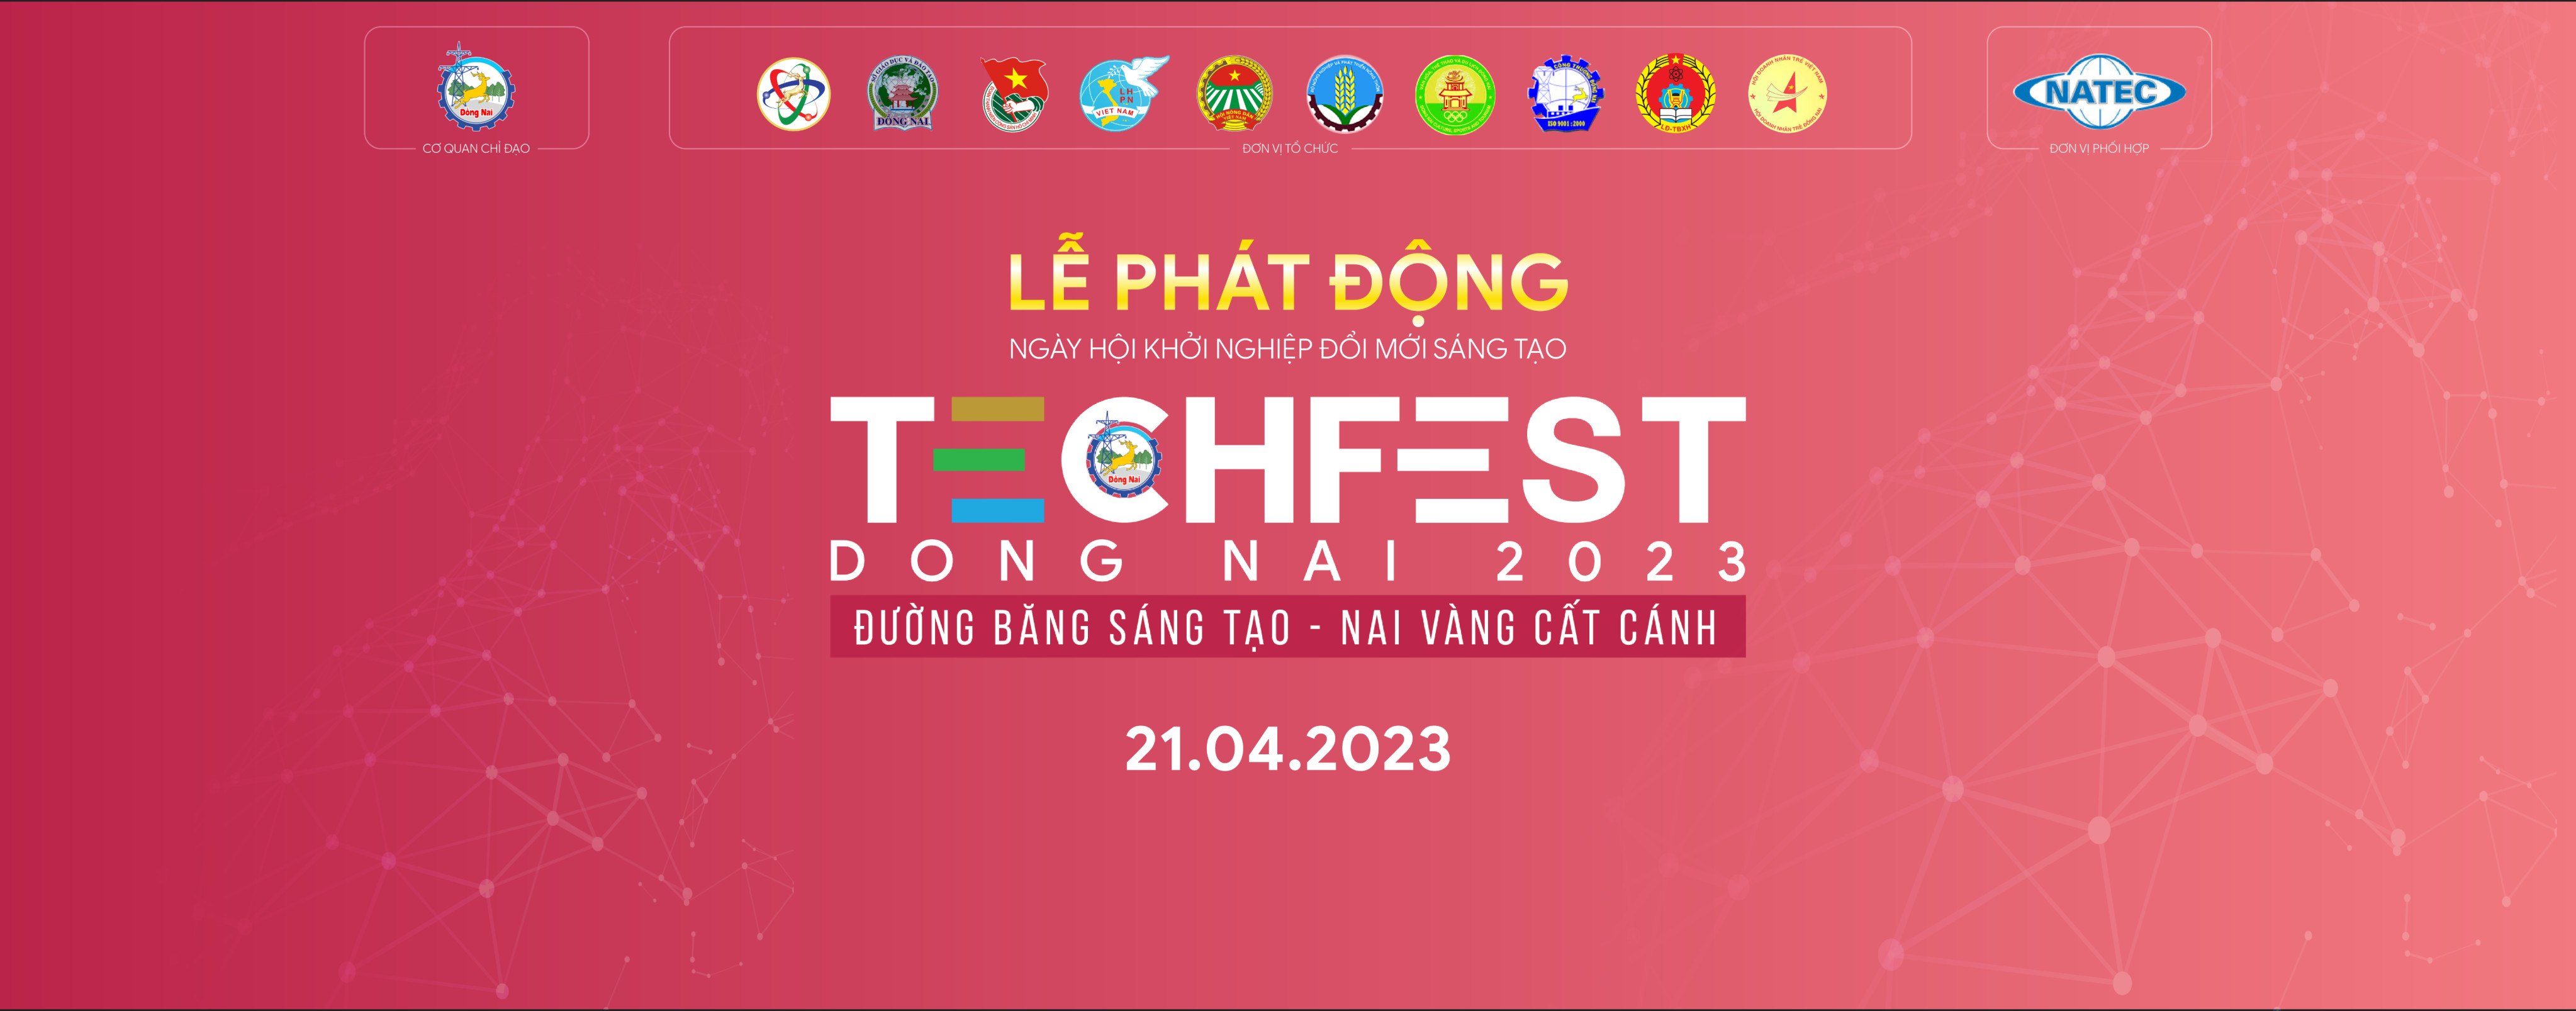 Lễ phát động Ngày hội khởi nghiệp đổi mới sáng tạo Techfest Dong Nai 2023